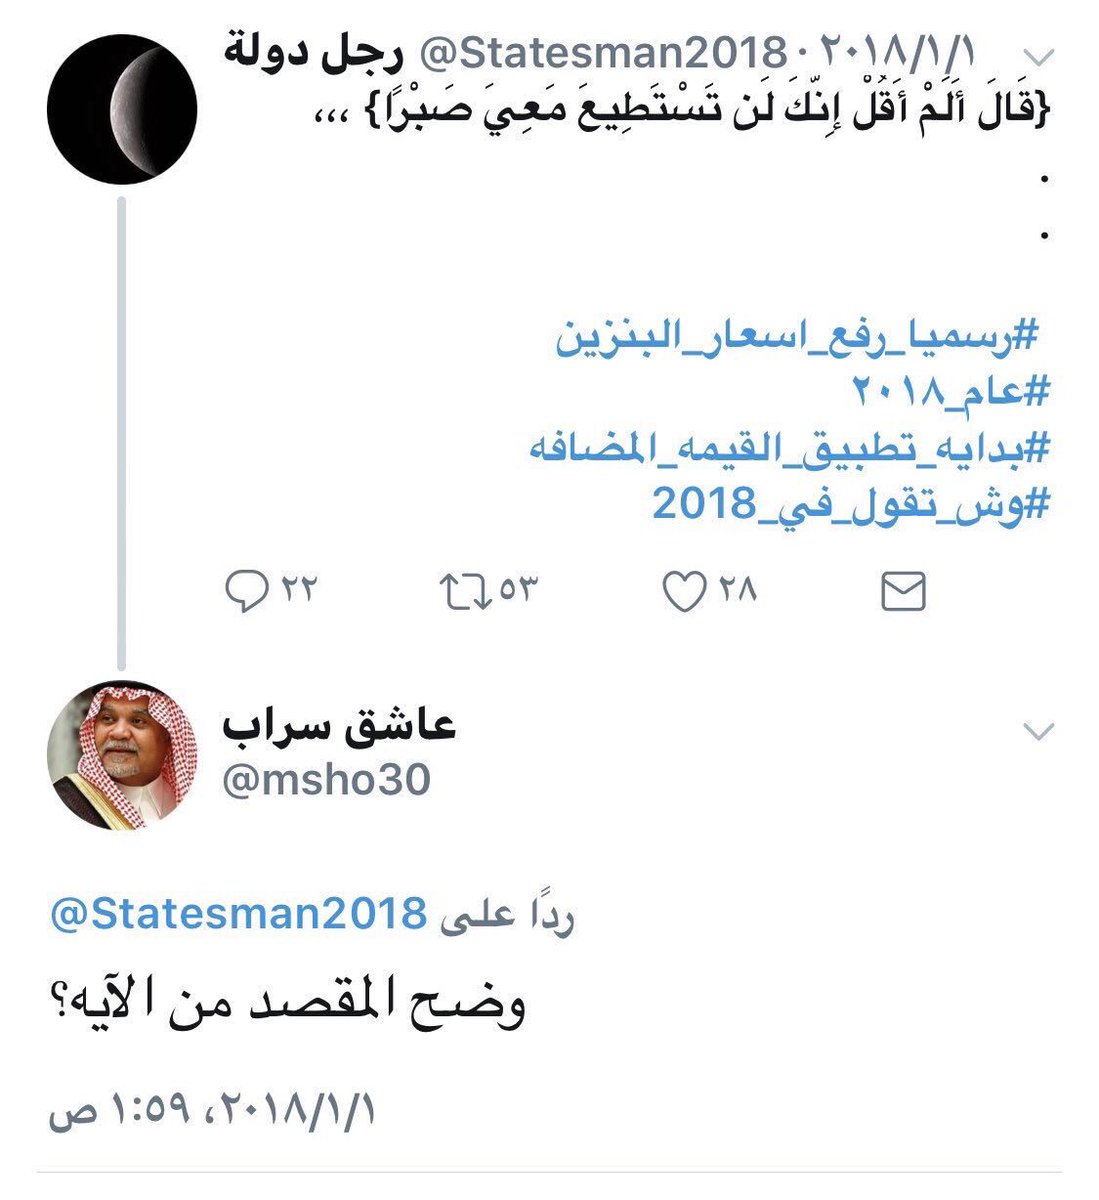 أبو فيصل على تويتر أترك لكم تعليقاً قاله رجل دولة